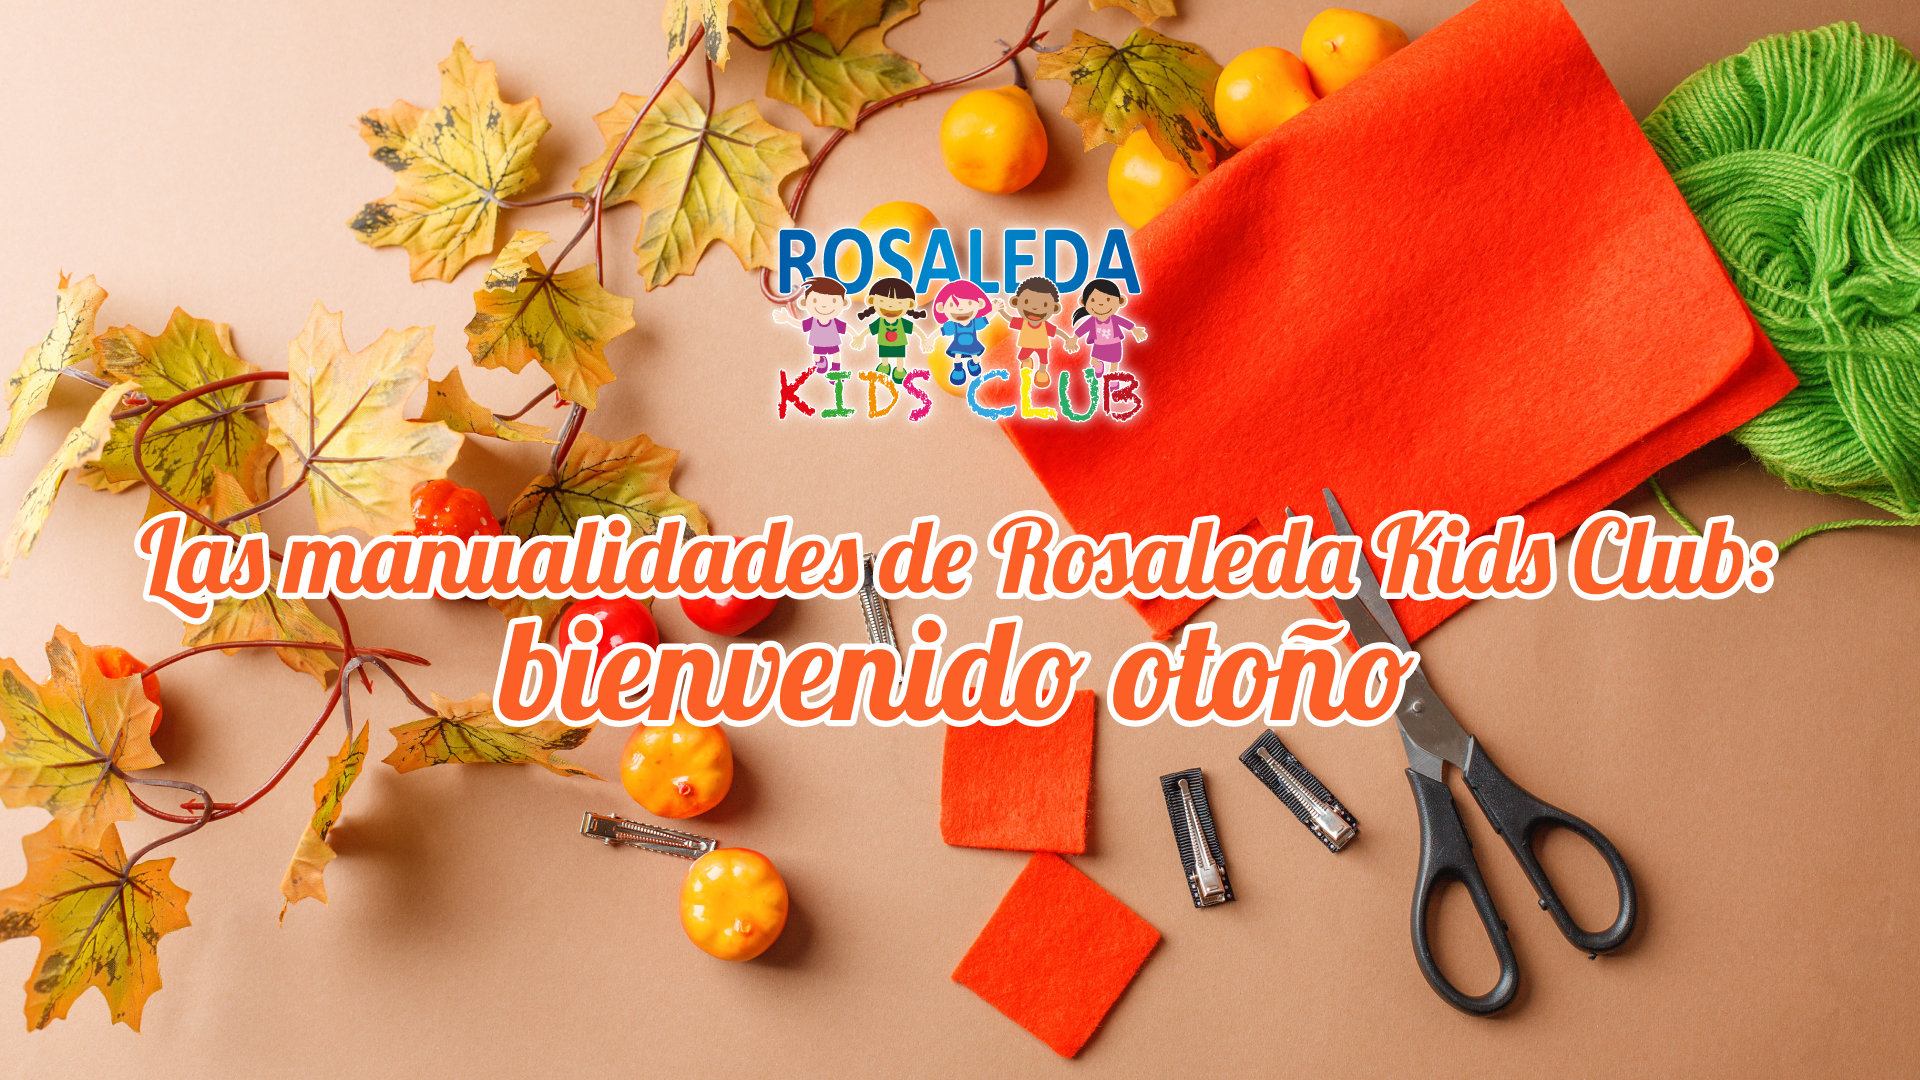 Las manualidades de Rosaleda Kids Club: bienvenido otoño